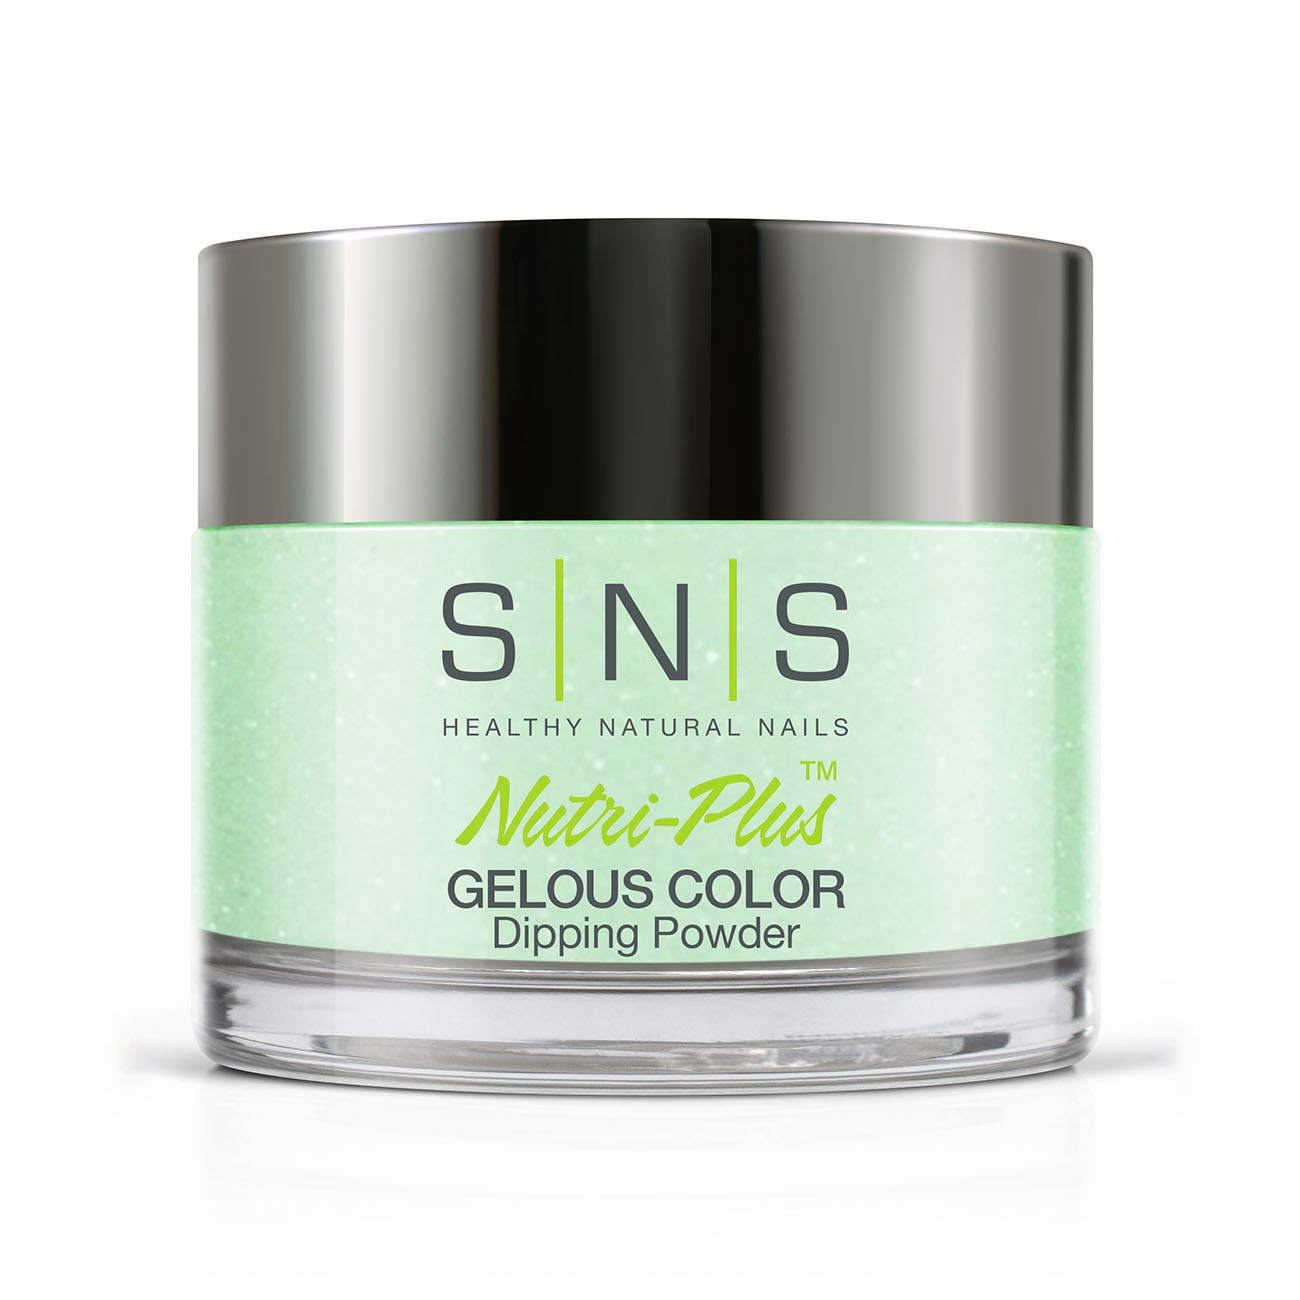 SNS Nails BC02 Pluribus Unum 28g (1oz) | Gelous Dipping Powder